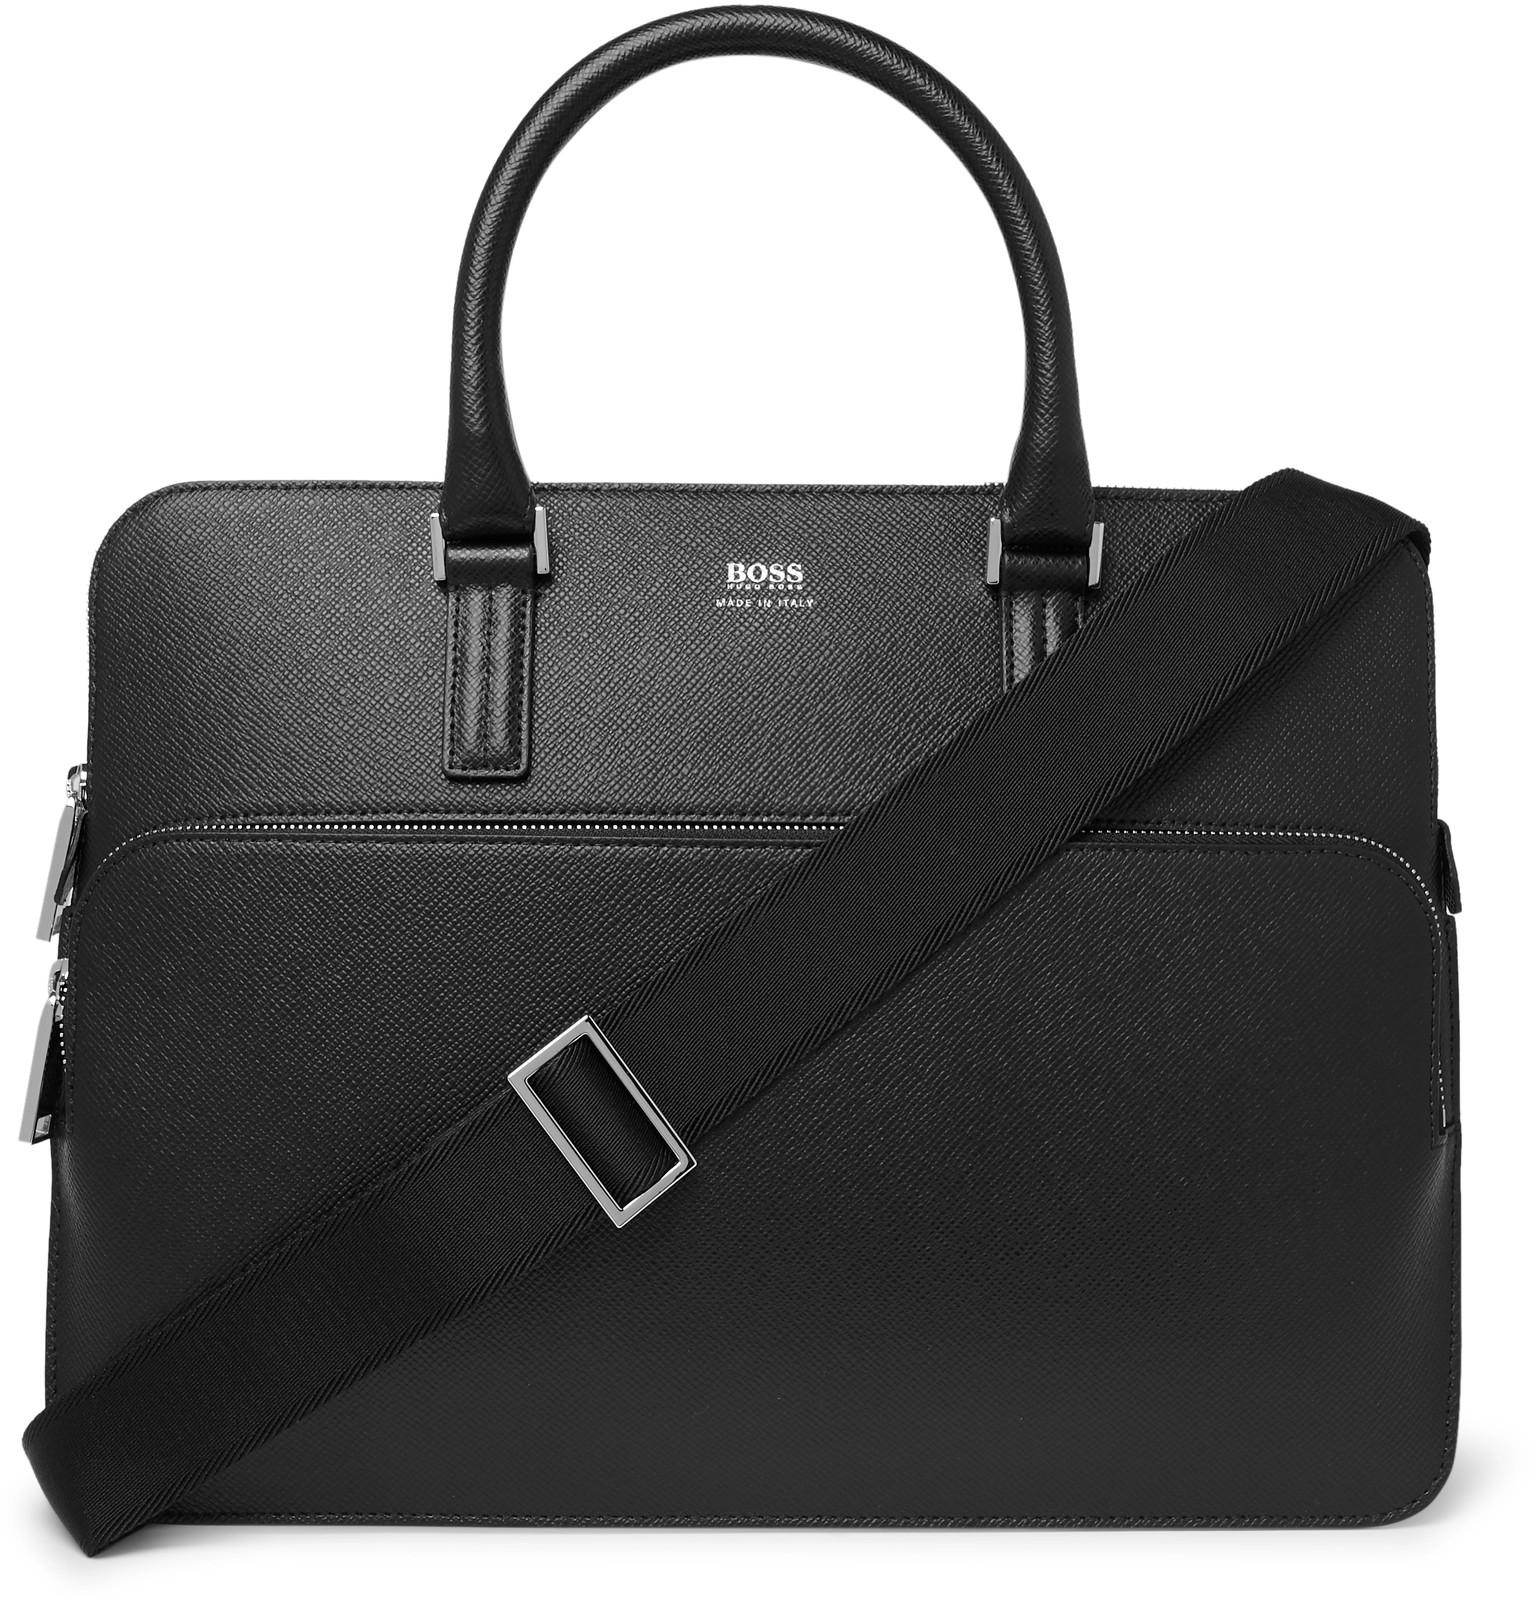 BOSS by Hugo Boss Full-grain Leather Briefcase in Black for Men - Lyst